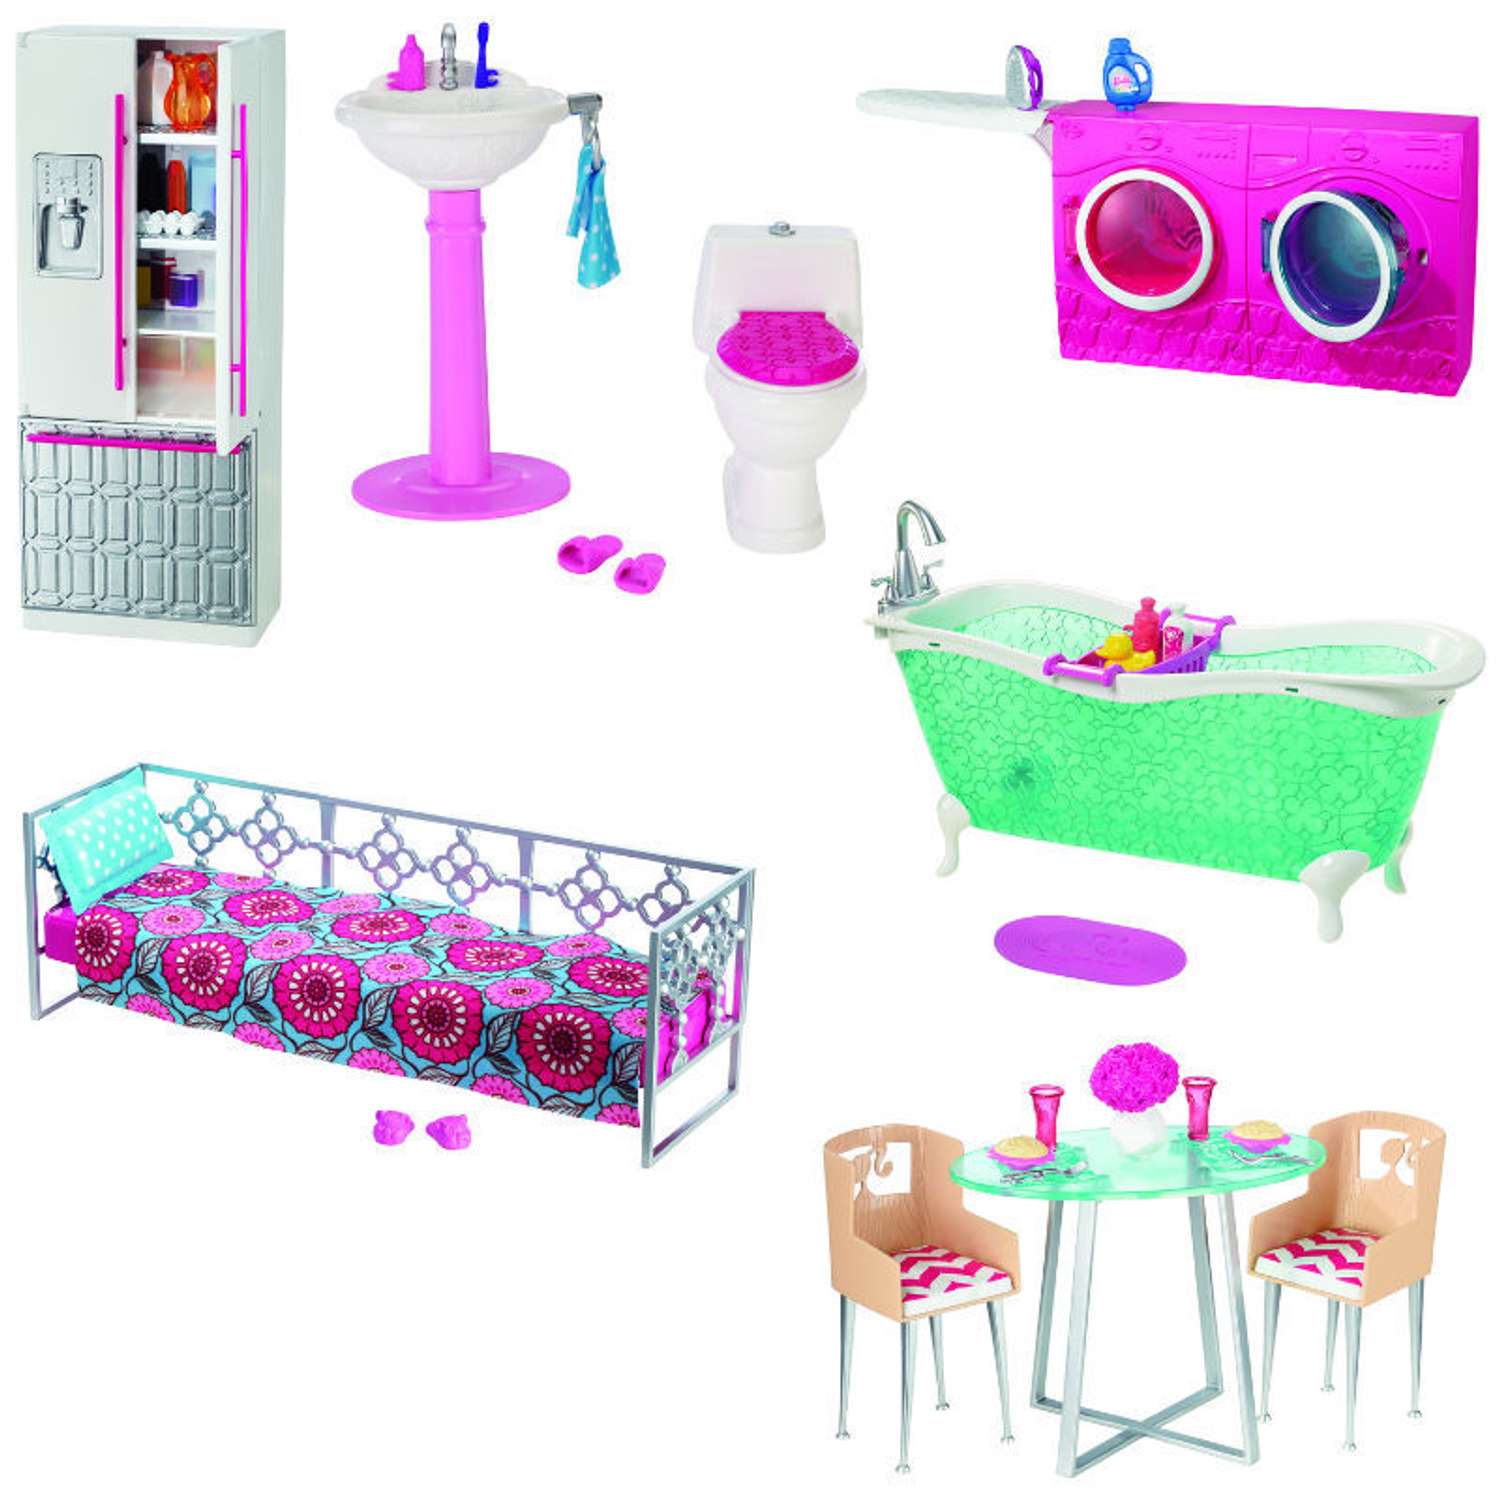 Набор мебели Barbie для декора дома в ассортименте CFG65 - фото 1